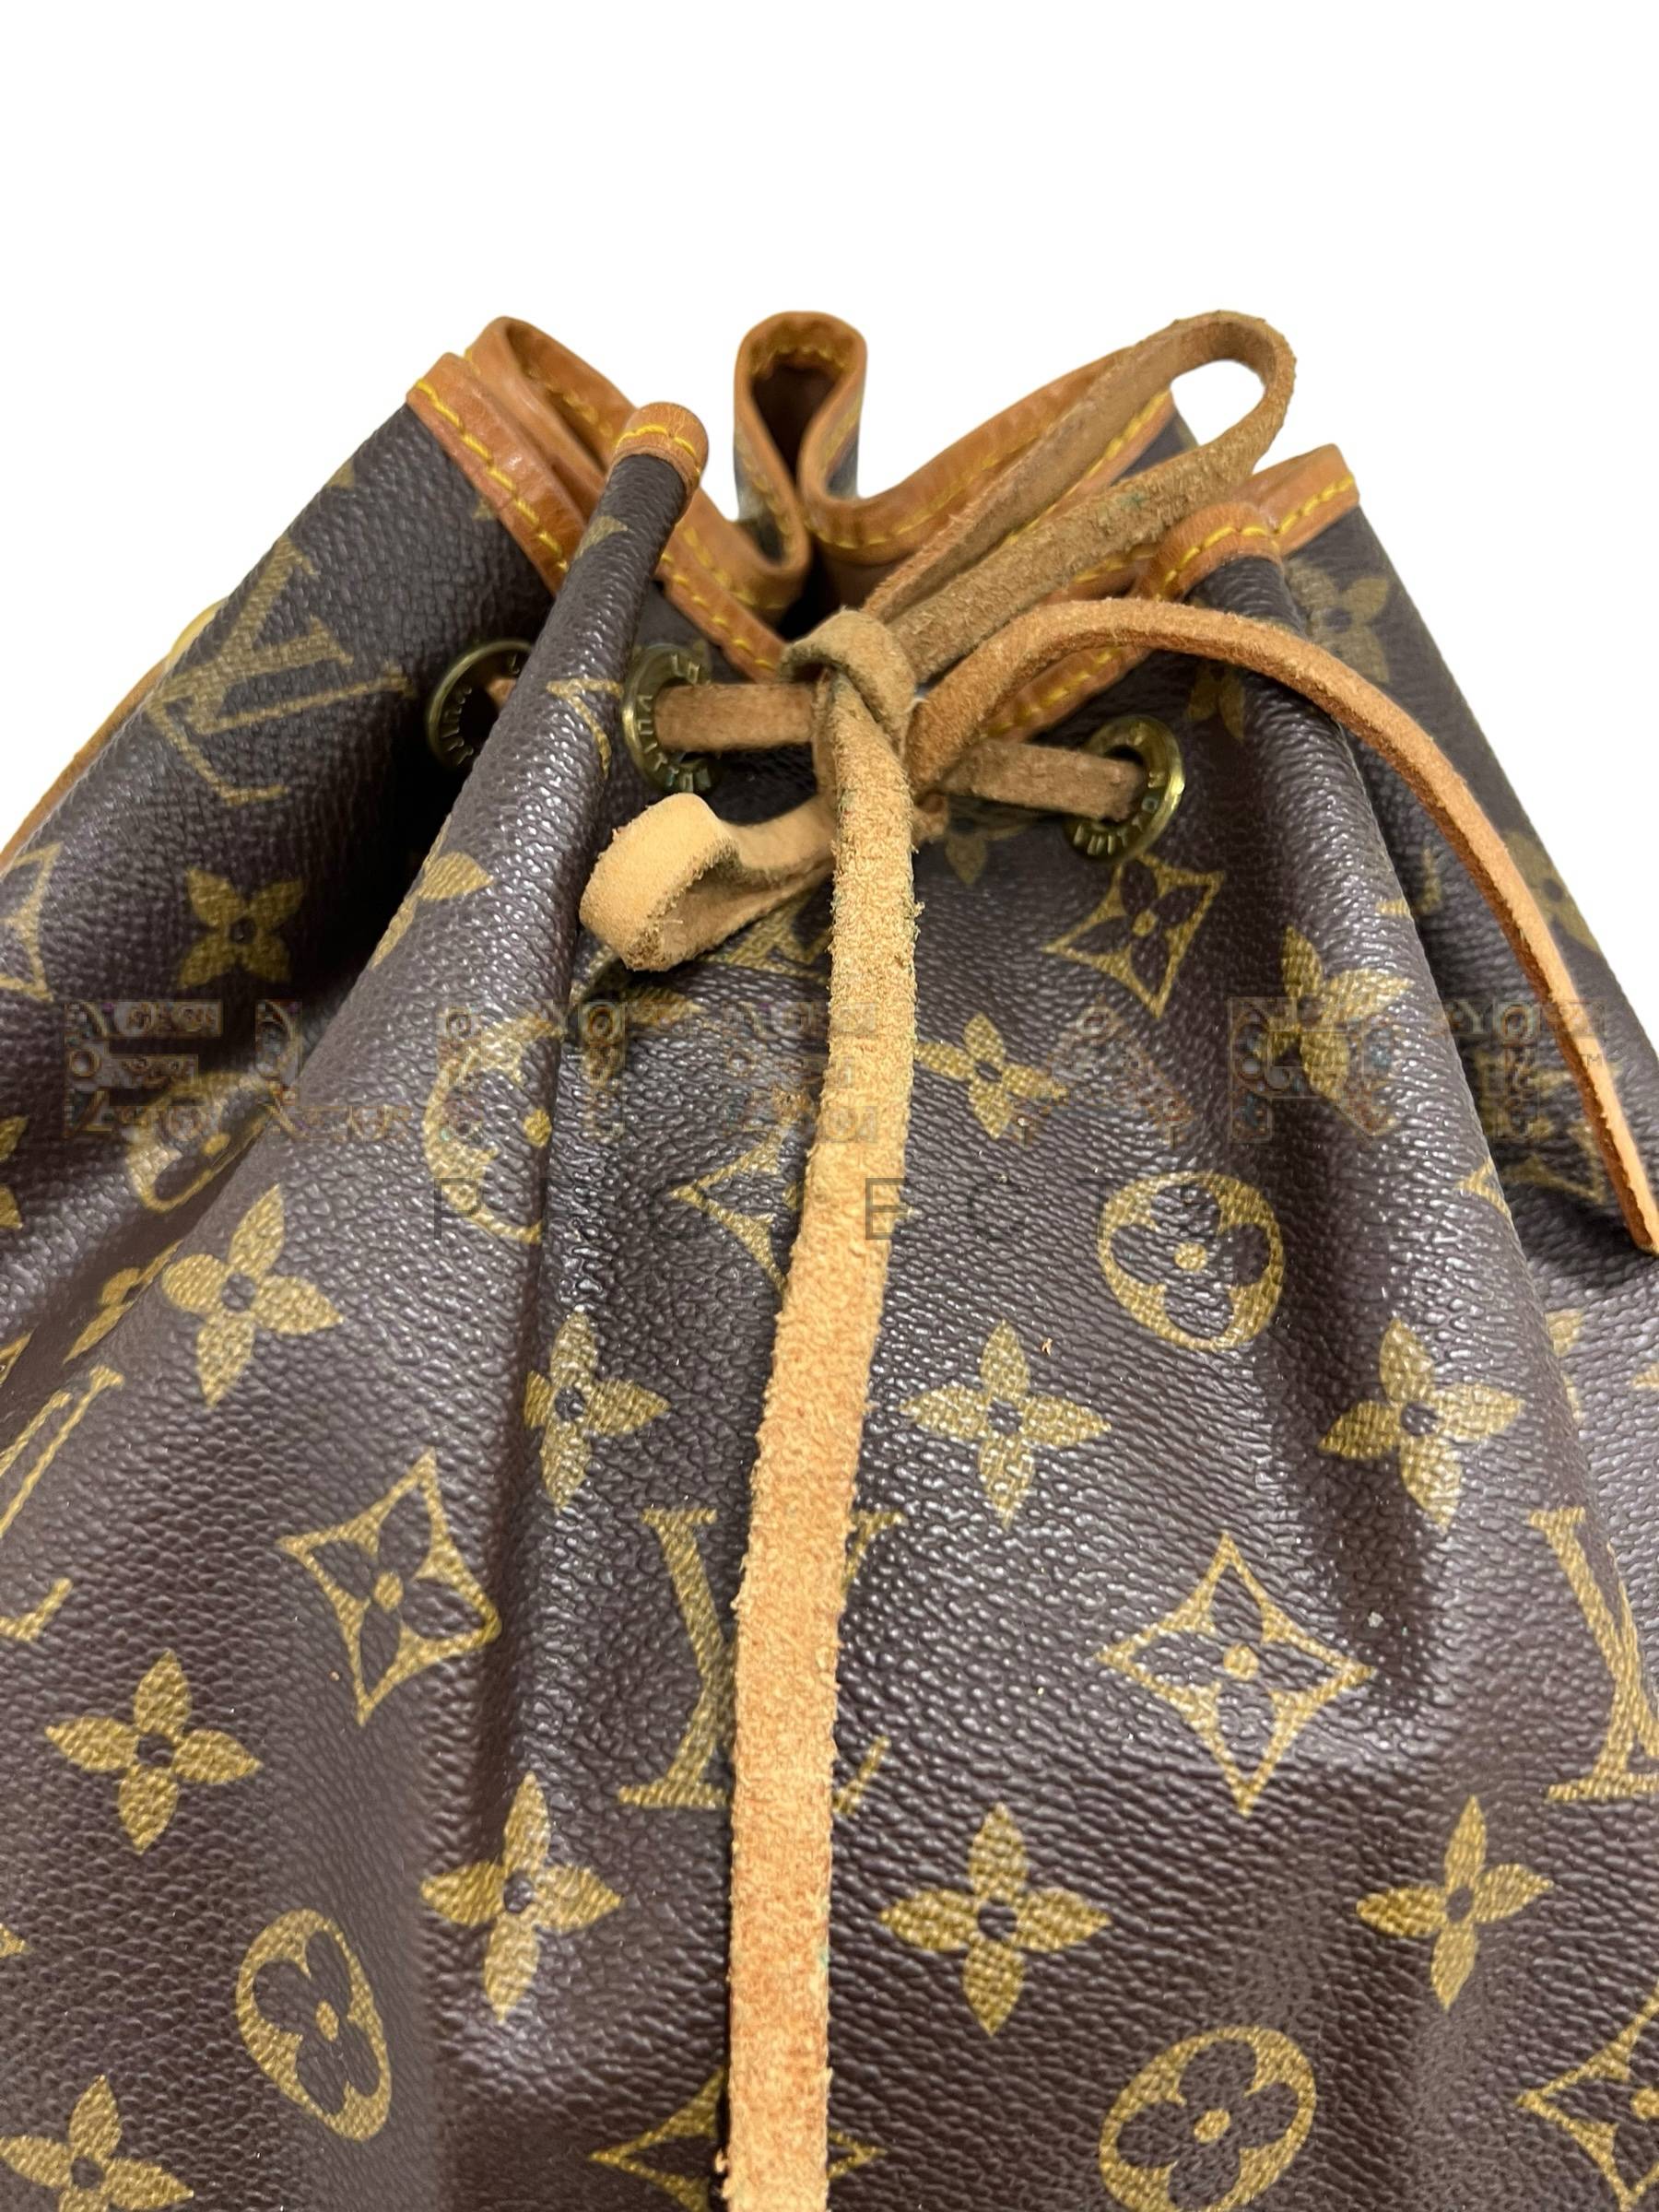 Louis Vuitton, Noè, PM bag